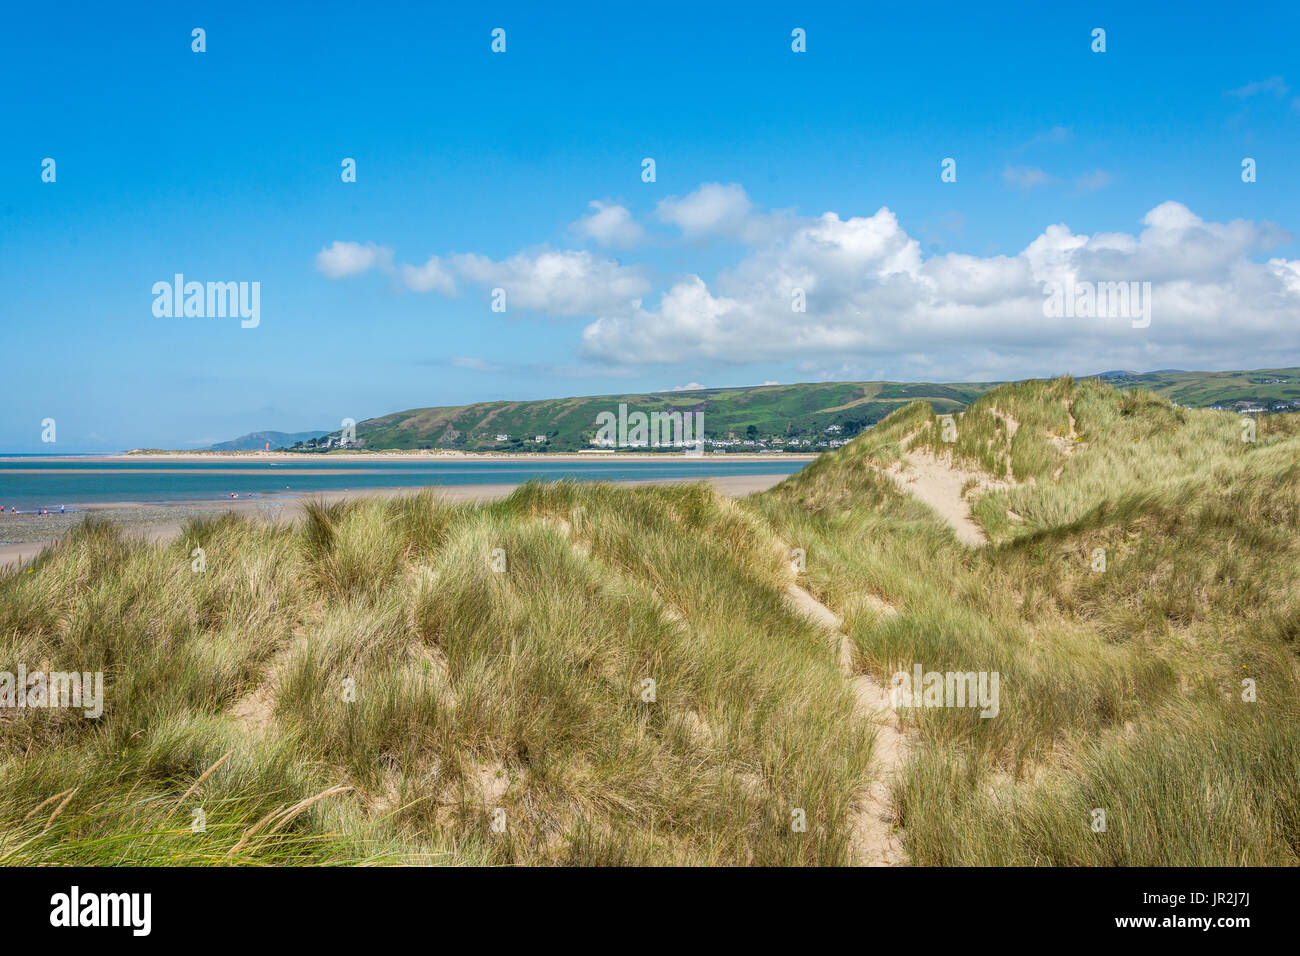 Lo straordinario paesaggio immagine del mare e la spiaggia dietro le dune di sabbia, con un bellissimo luminoso cielo blu e bianchi e soffici nuvole. Foto Stock